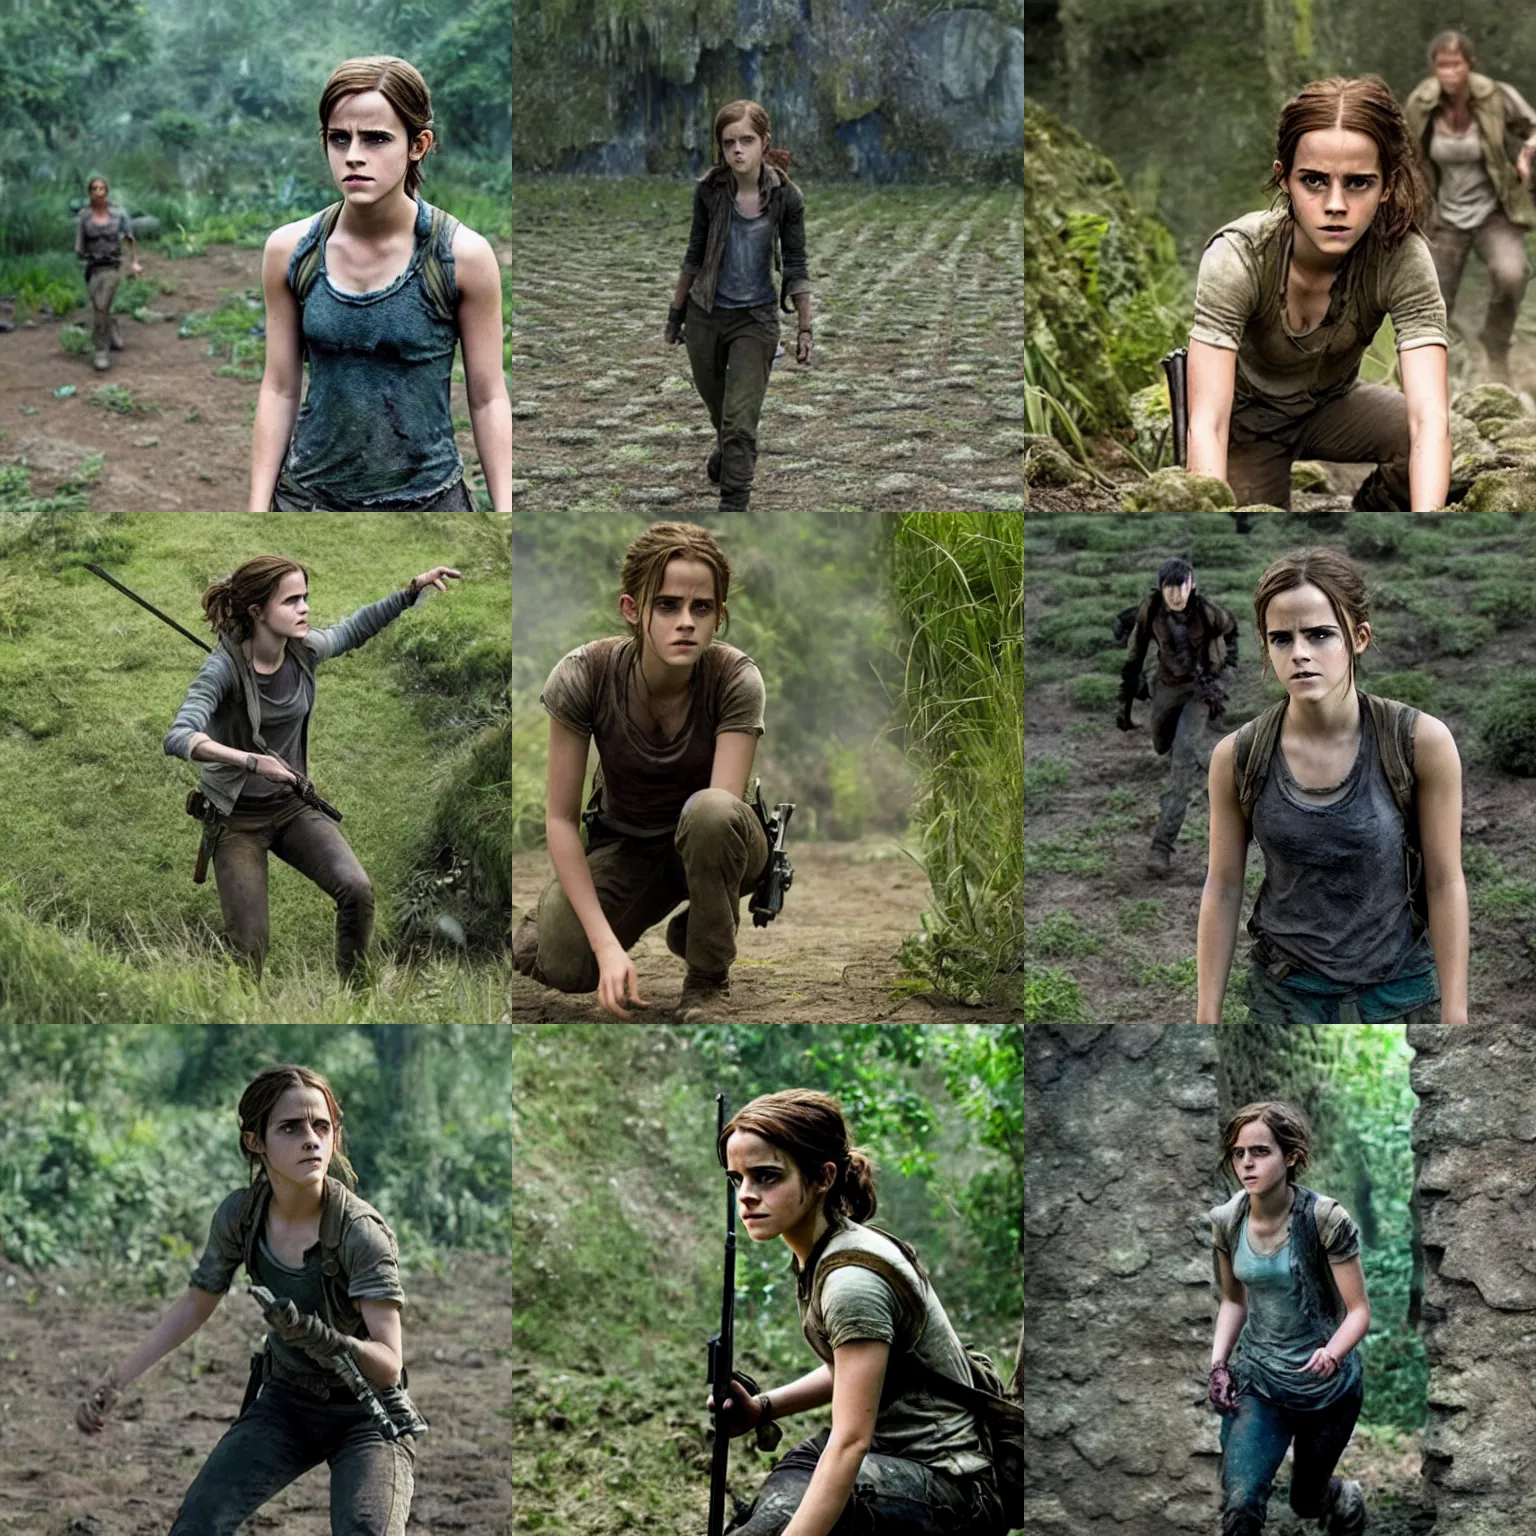 Prompt: Movie still of Emma Watson in Maze Runner